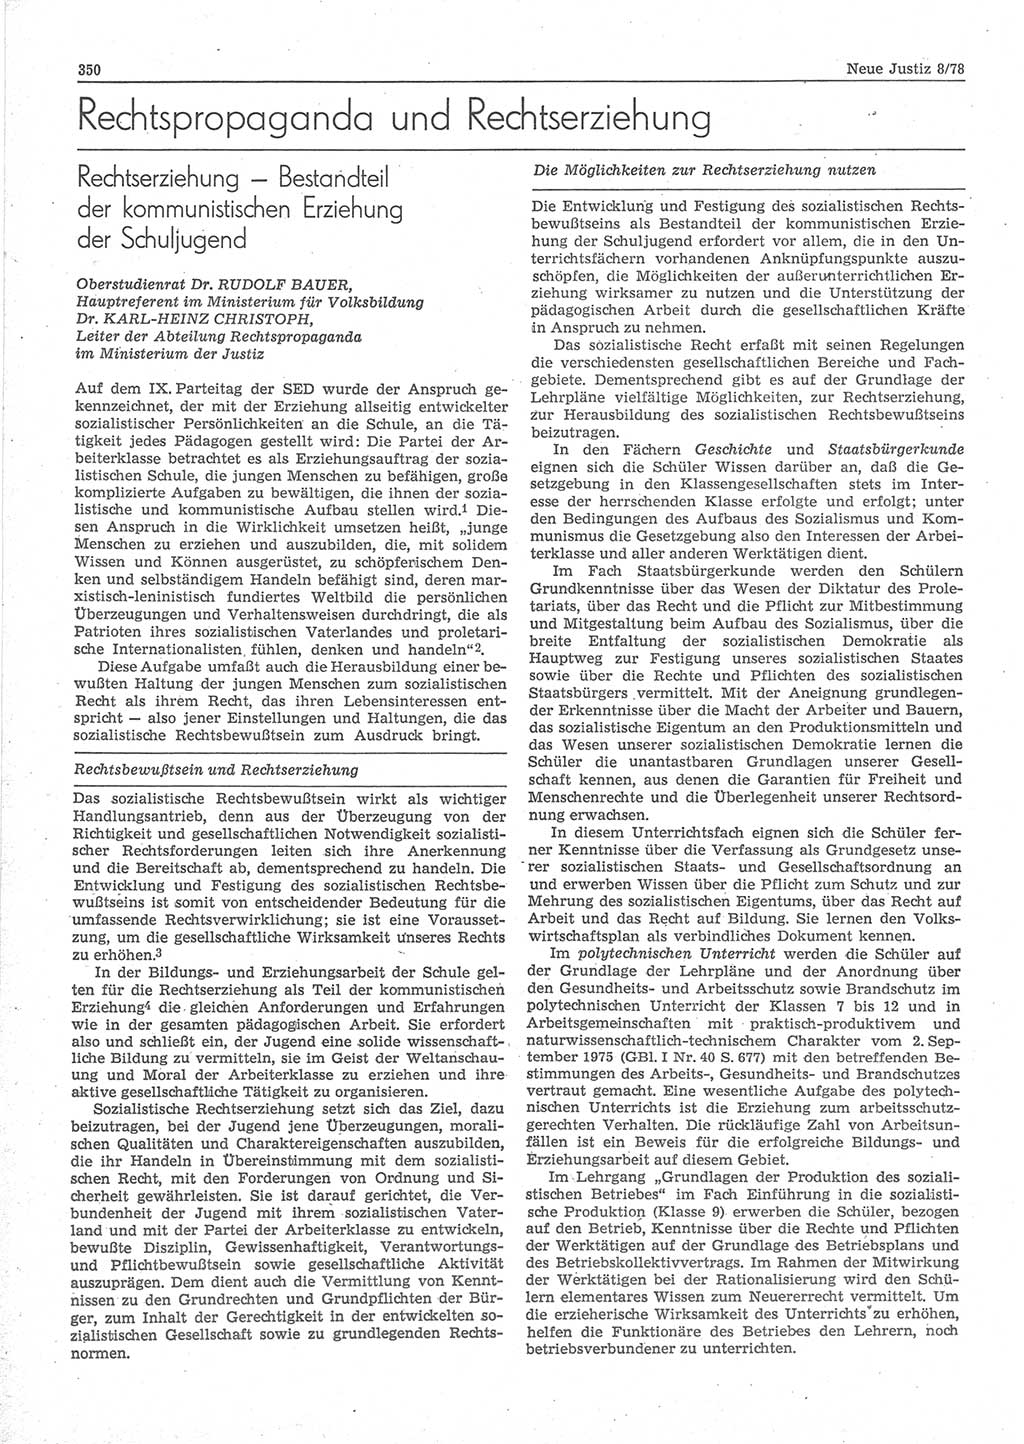 Neue Justiz (NJ), Zeitschrift für sozialistisches Recht und Gesetzlichkeit [Deutsche Demokratische Republik (DDR)], 32. Jahrgang 1978, Seite 350 (NJ DDR 1978, S. 350)